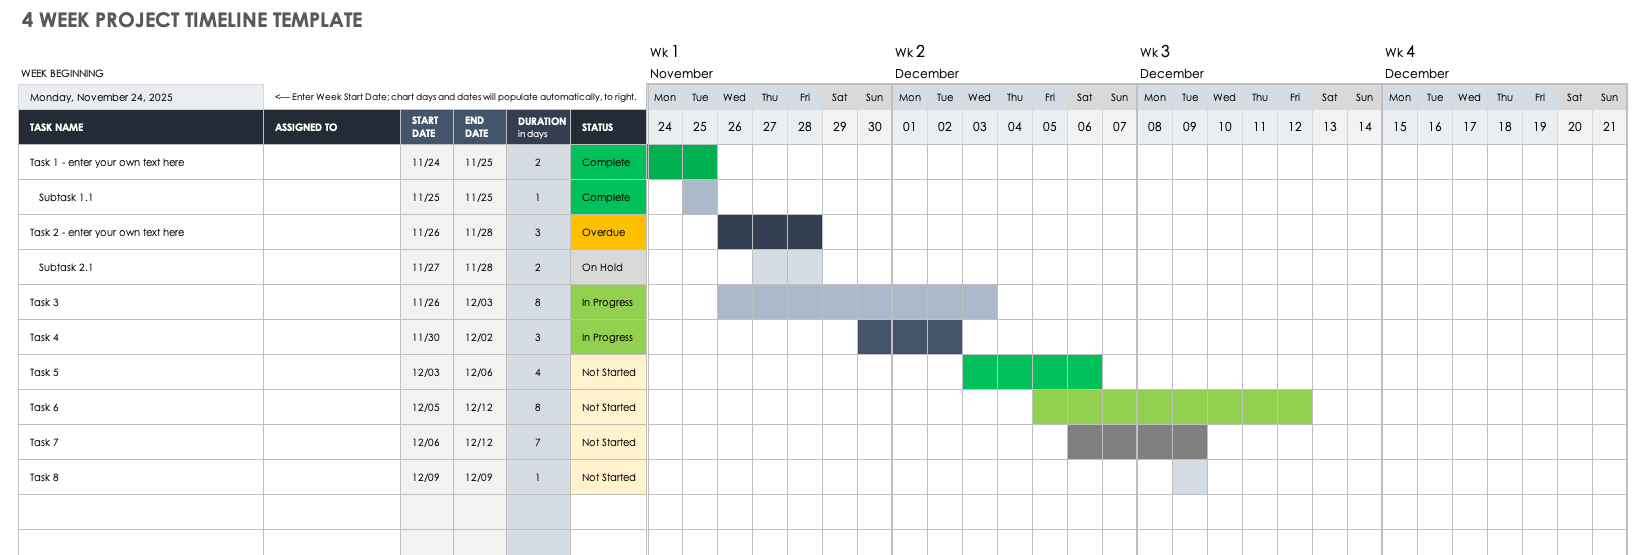 4 Week Project Calendar Template